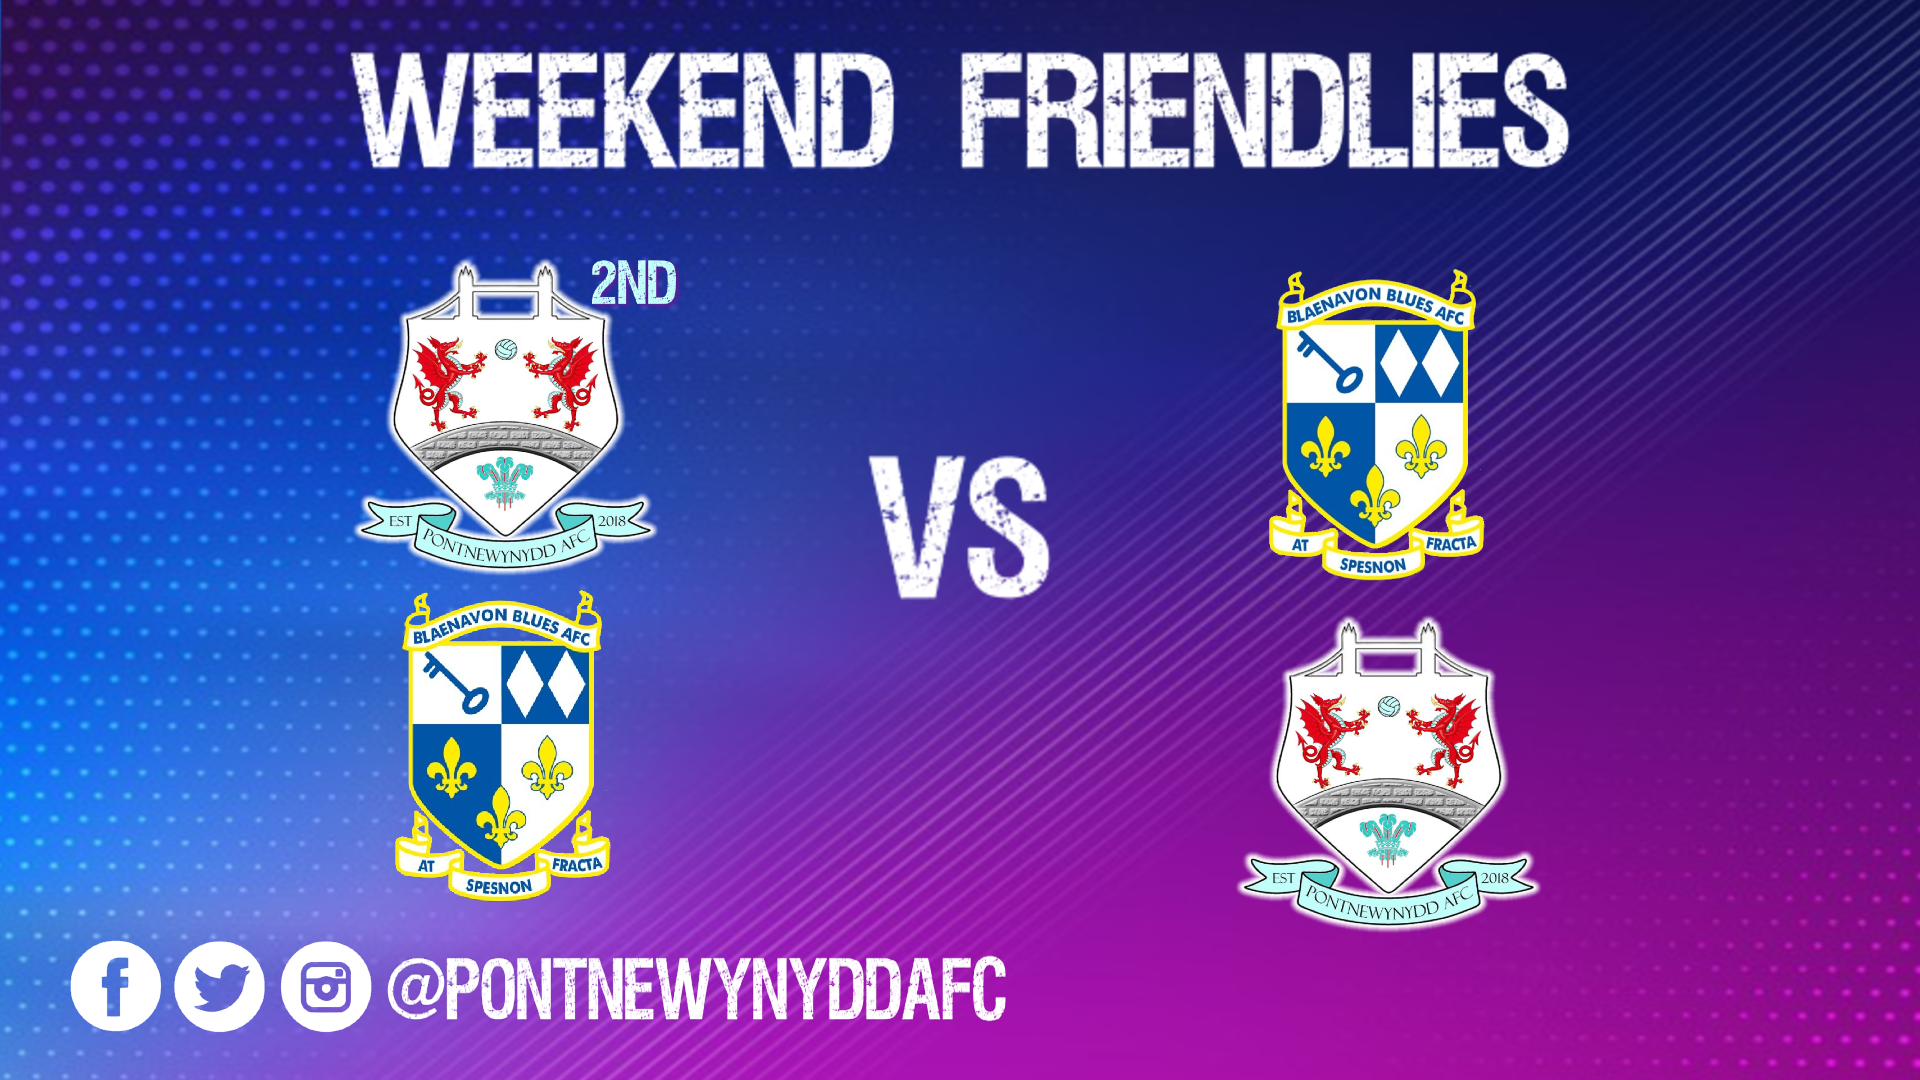 pontnewynydd AFC fixtures July 3rd